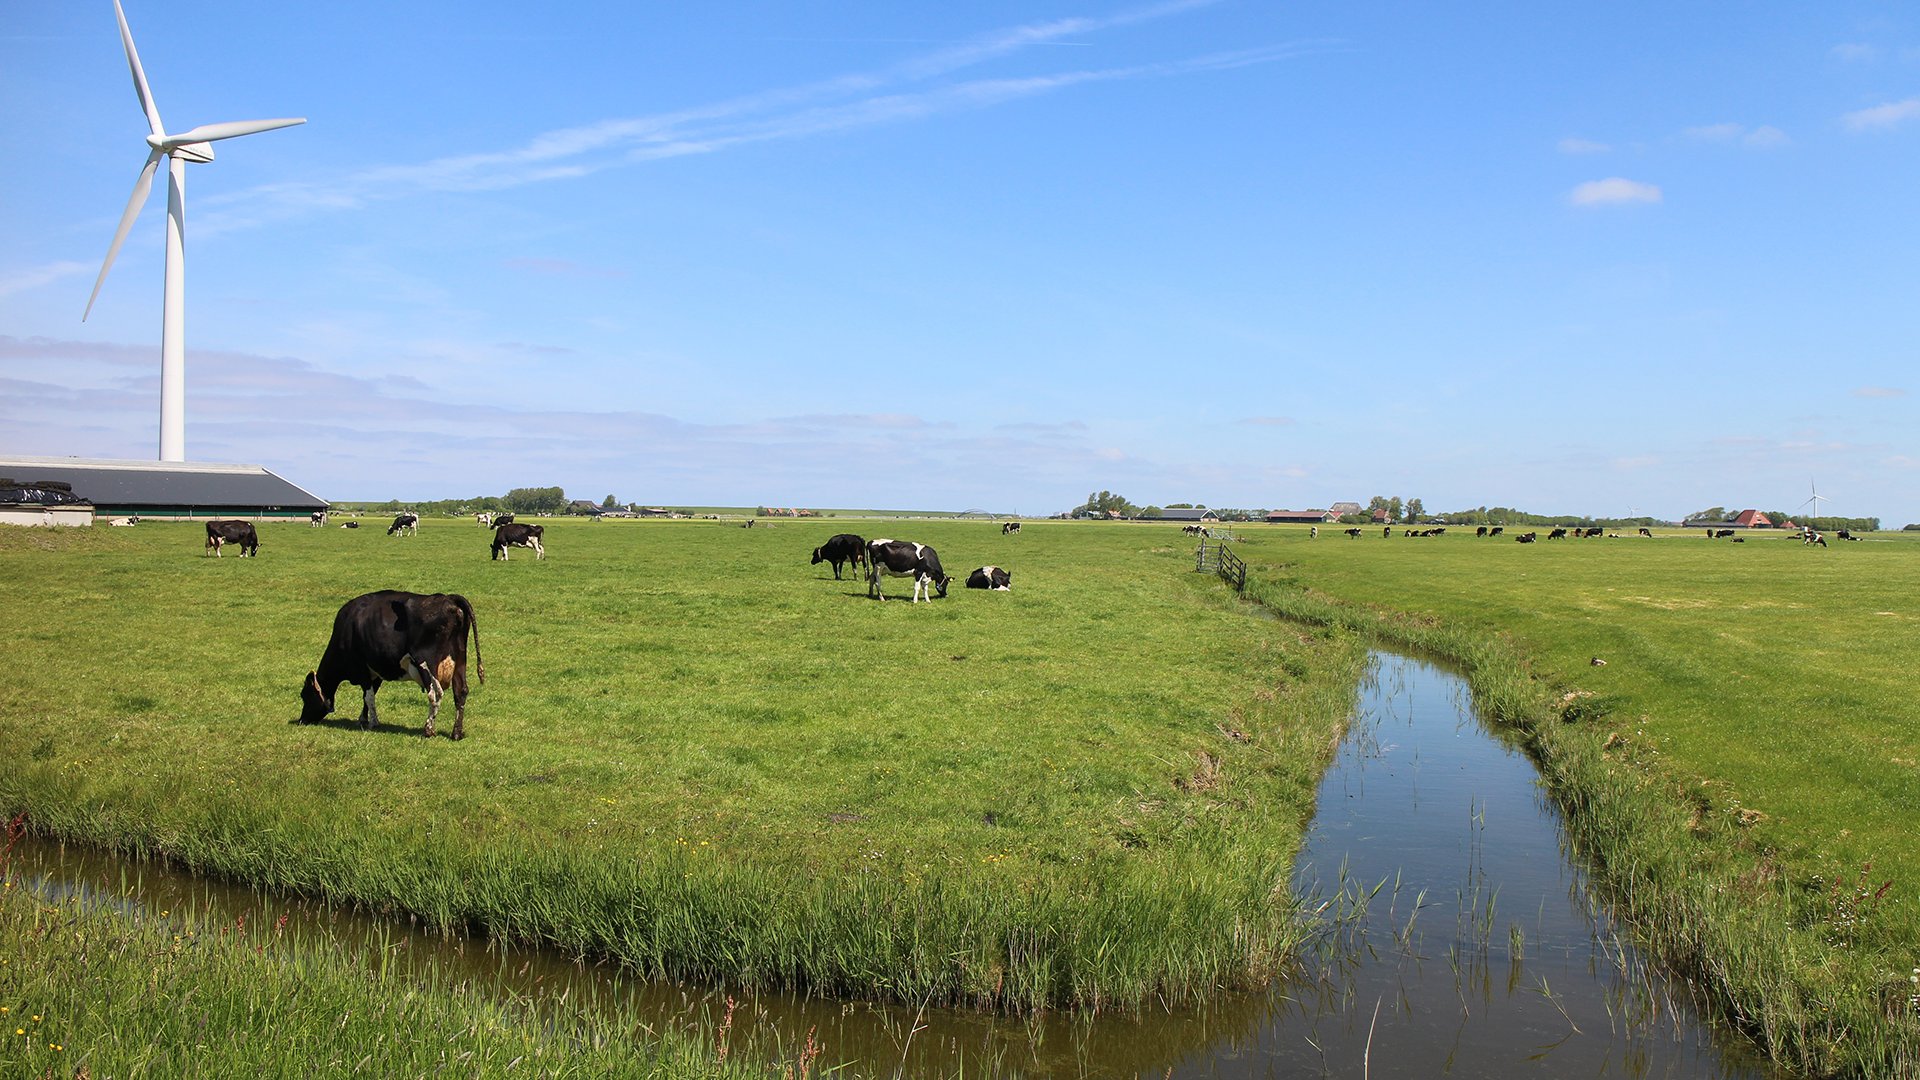 Koeien die aan het grazen zijn in een typisch landelijk gebied in Nederland